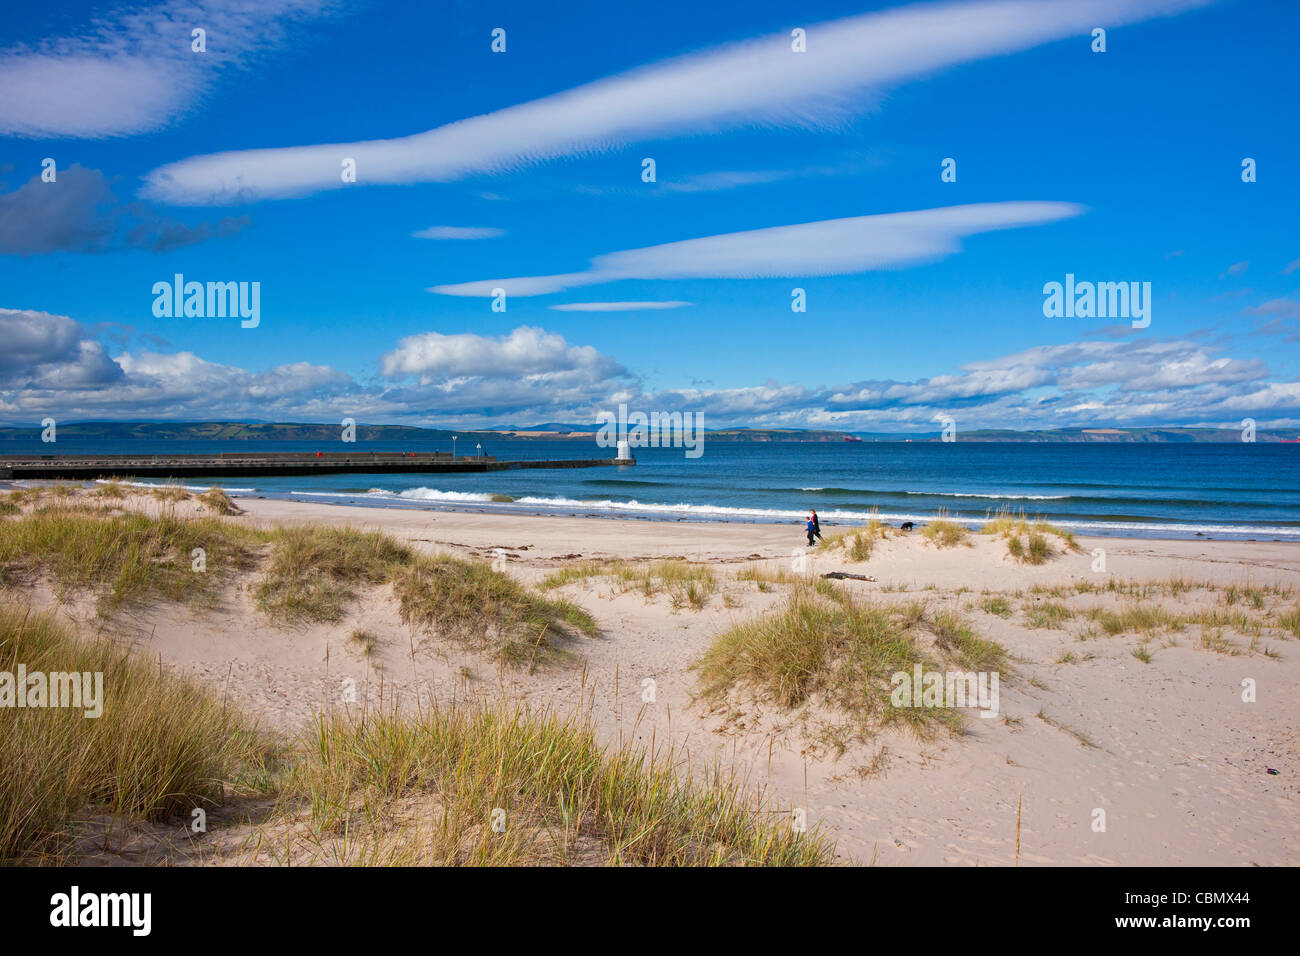 La playa de Nairn, Inverness, región de tierras altas, Escocia Foto de stock